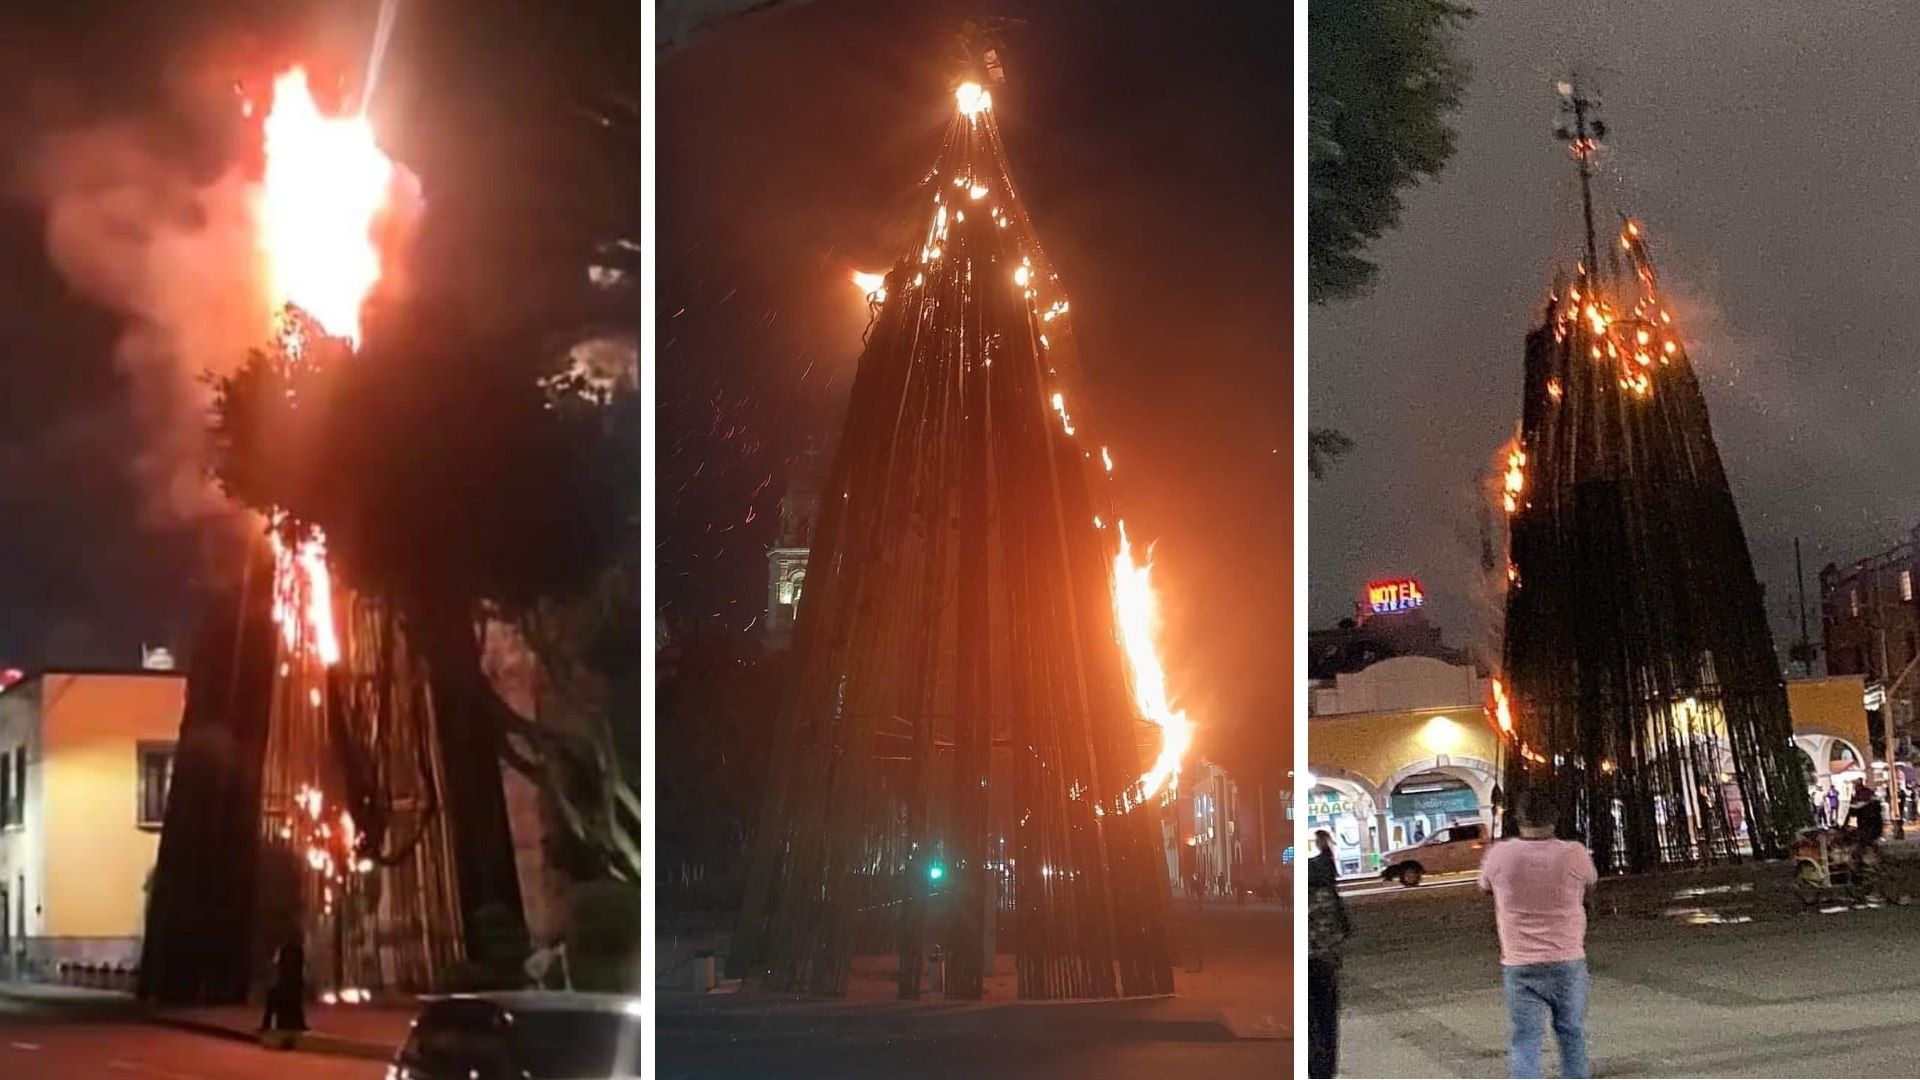 Incendio Consume Árbol de Navidad en Explanada de Tlalnepantla